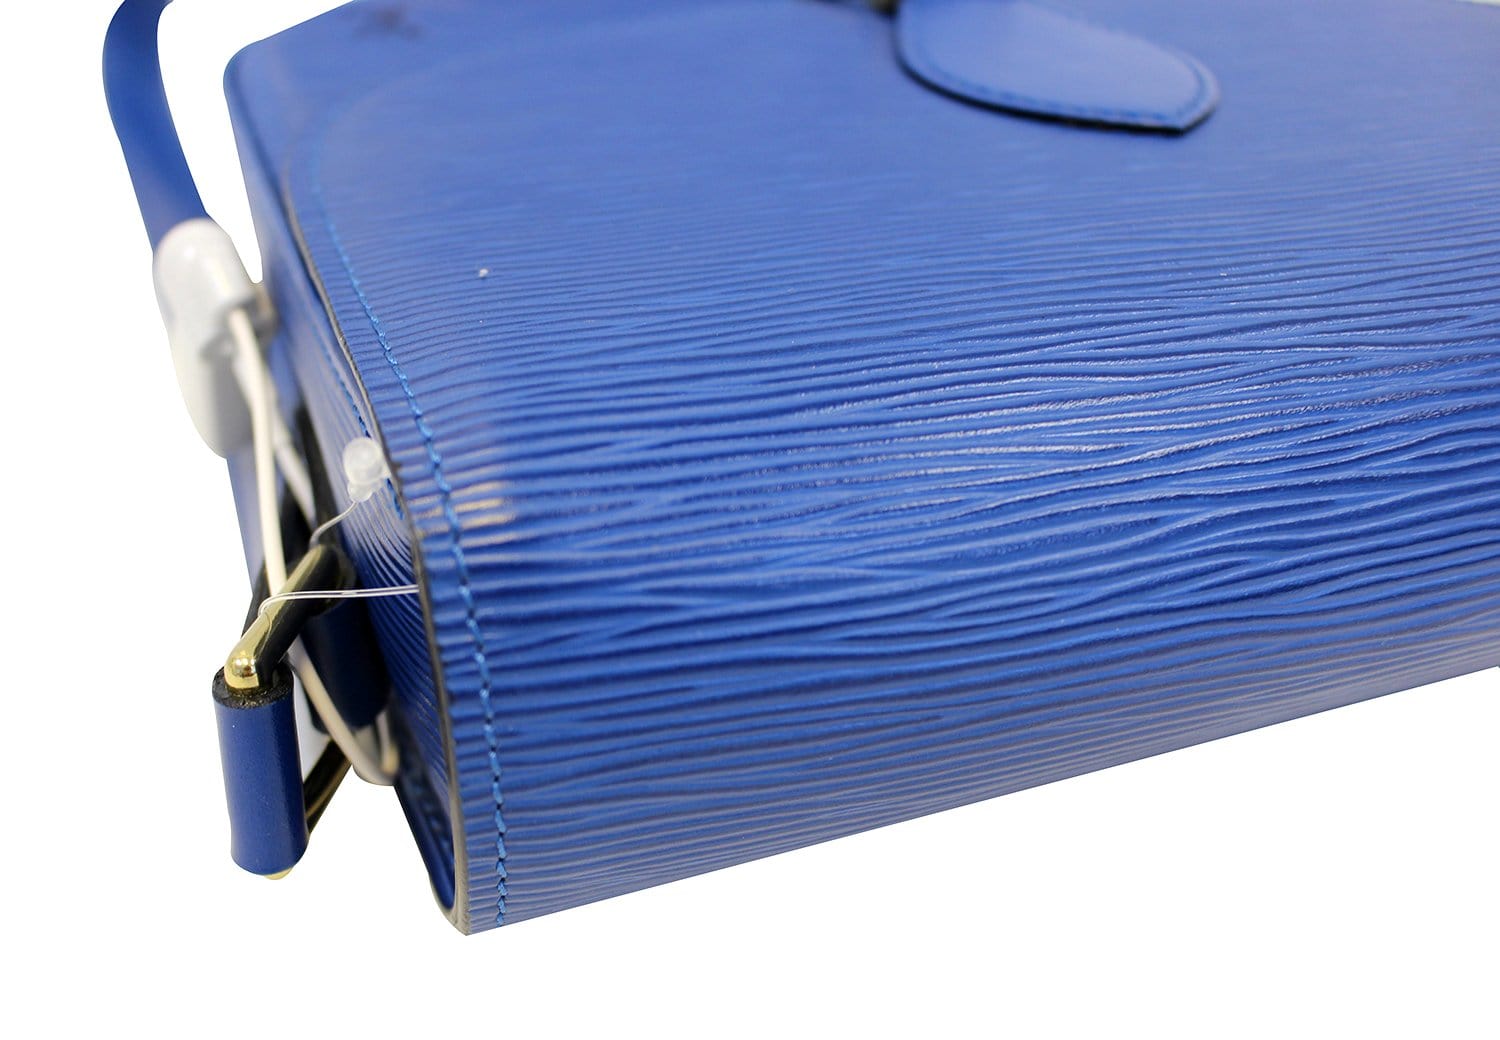 Saint cloud vintage leather crossbody bag Louis Vuitton Blue in